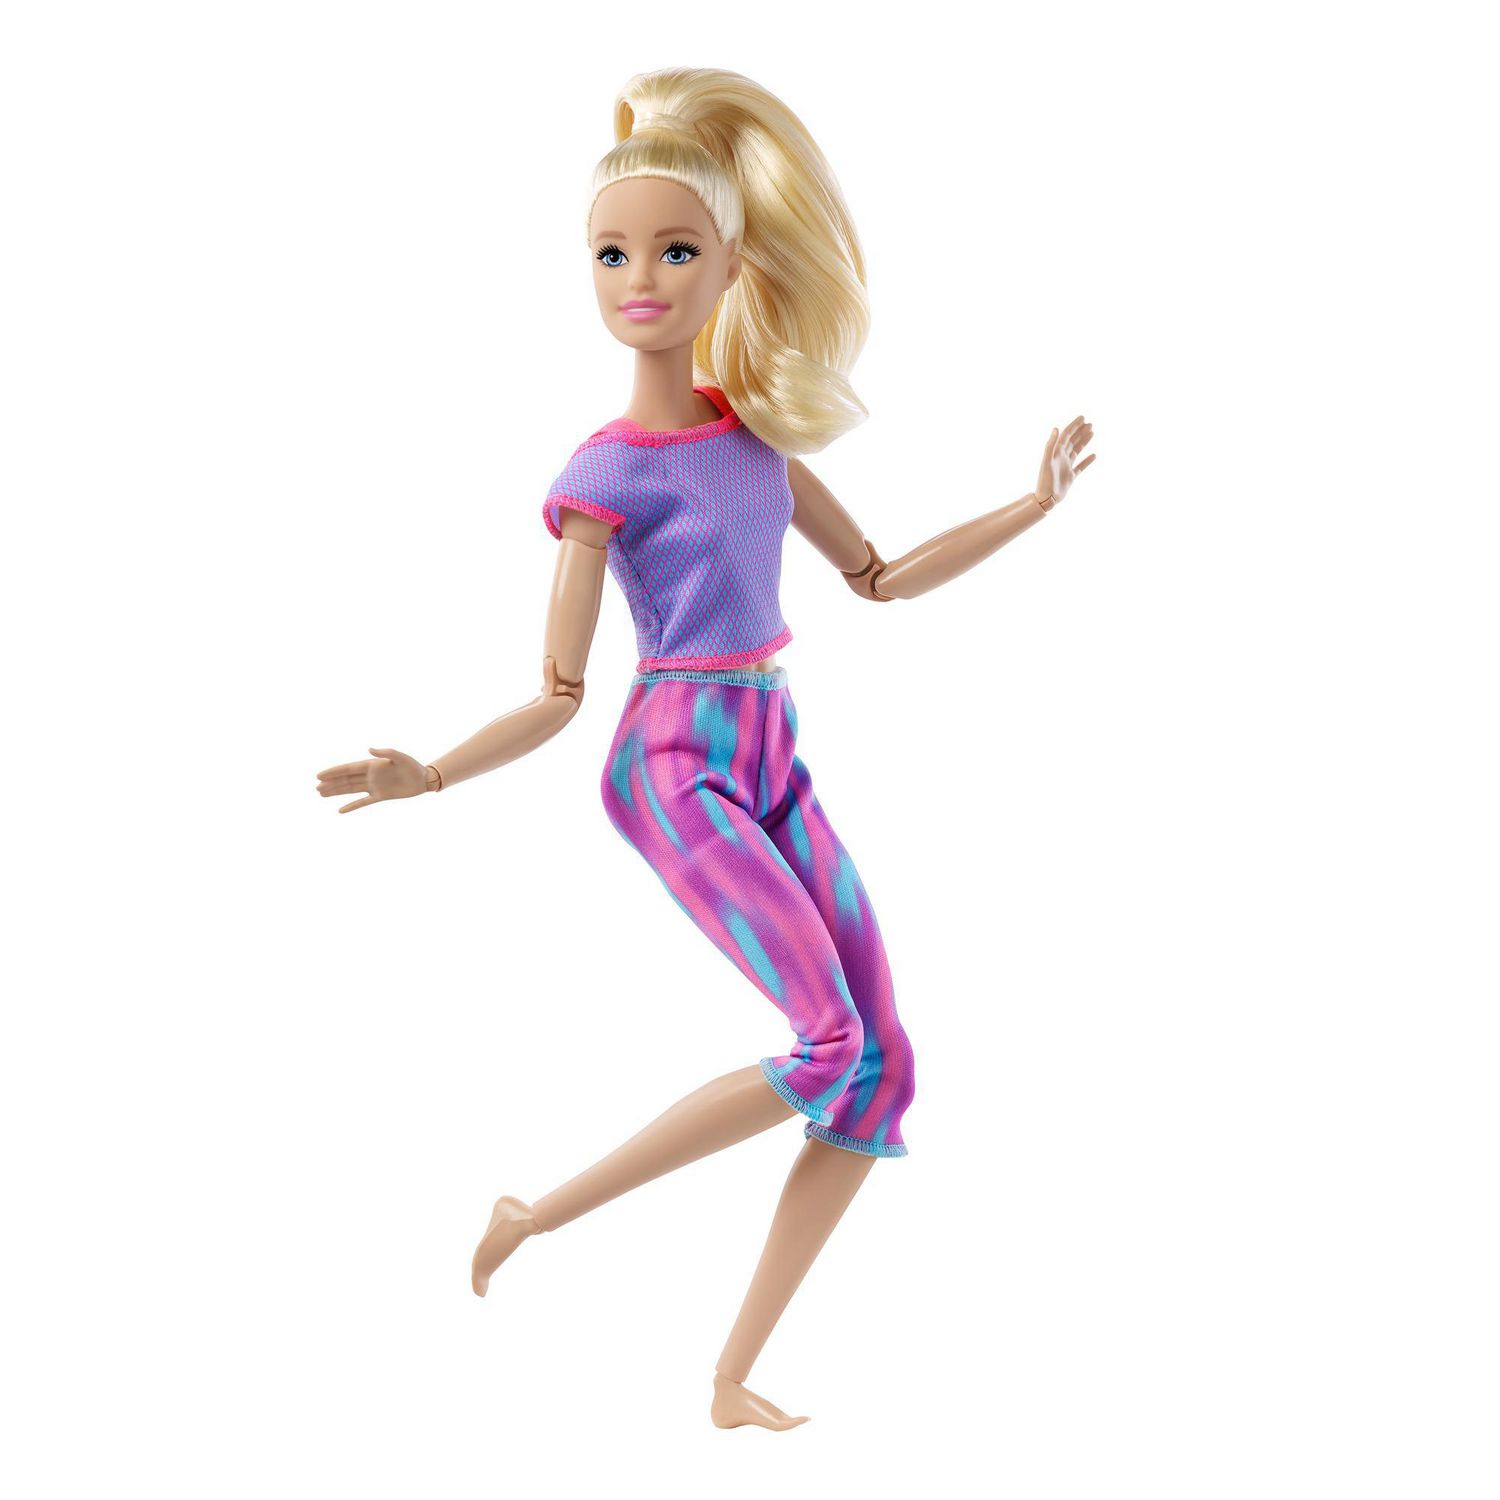 Poupée Barbie : à 56 ans, elle aurait besoin d'un lifting 